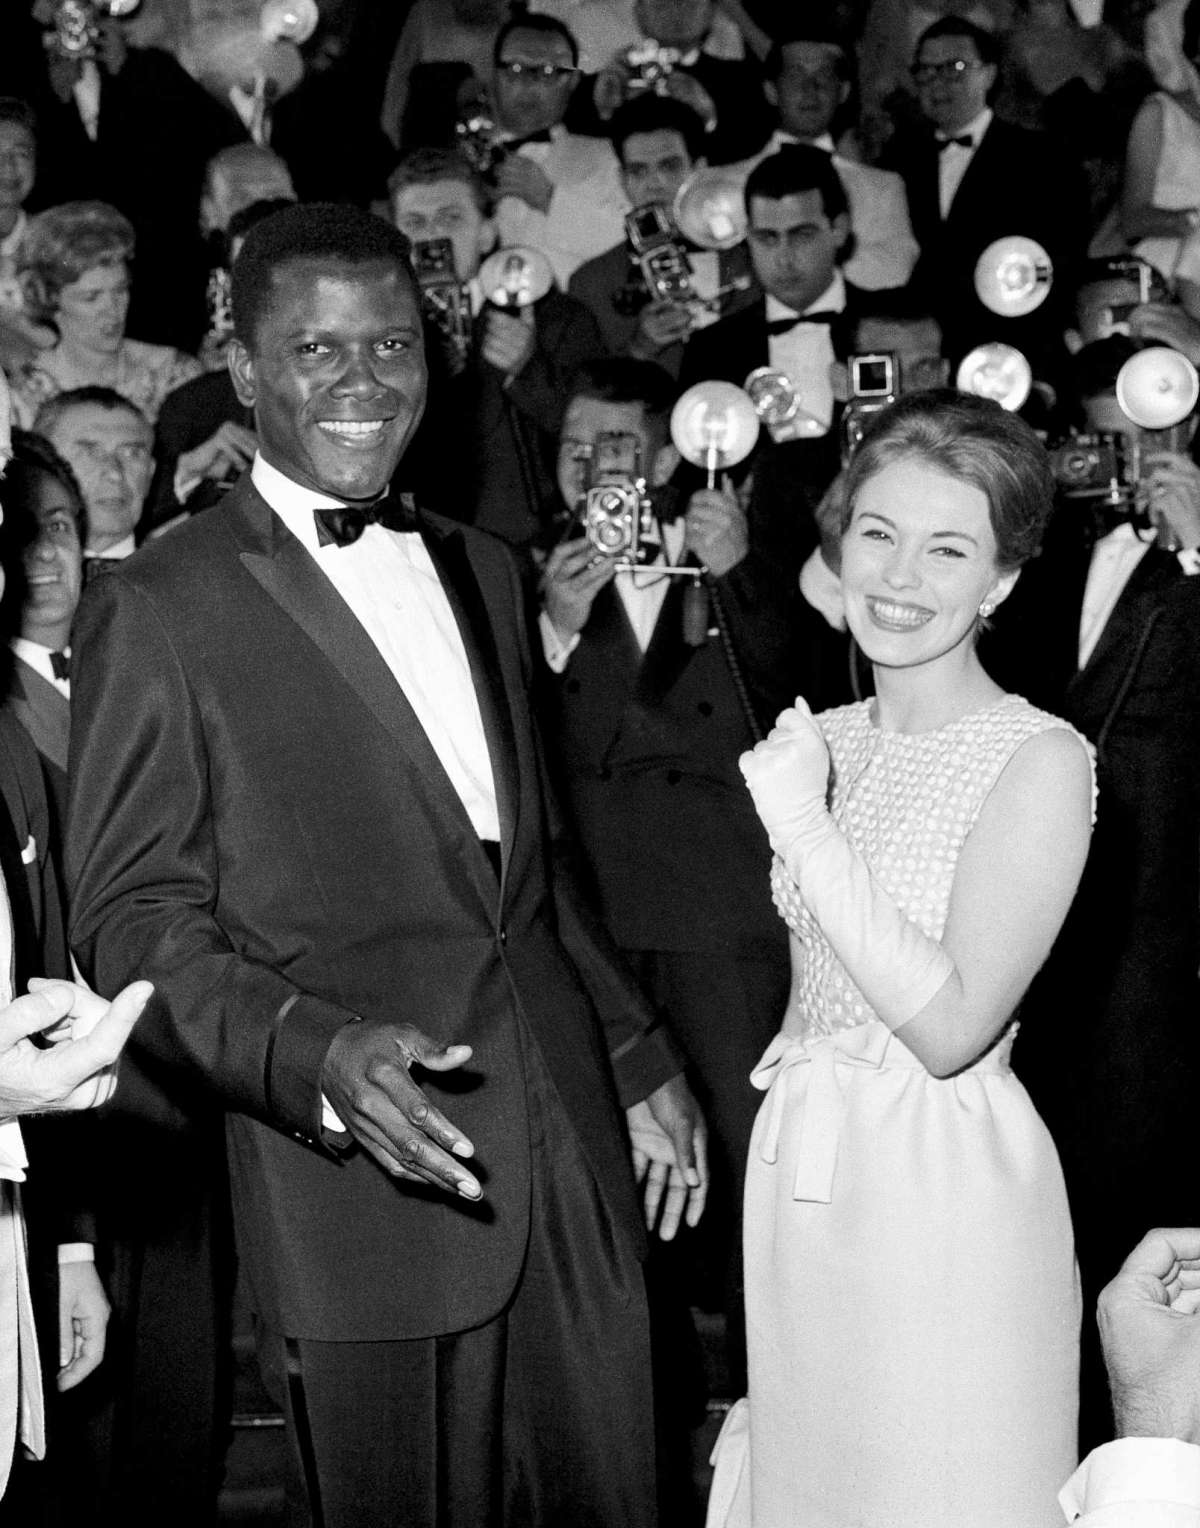 ARCHIVO - Los actores Sidney Poitier, a la izquierda, y Jean Seberg aparecen en el Festival de Cine de Cannes, Francia, para la proyección de su película "A Raisin in the Sun", el 13 de mayo de 1961. Poitier, actor pionero e inspiración permanente que transformó la forma de representar a los negros en la pantalla, se convirtió en el primer actor negro en ganar un premio de la Academia a la mejor interpretación principal y el primero en ser un éxito de taquilla, murió el jueves 6 de enero de 2022 en las Bahamas. Tenía 94 años.